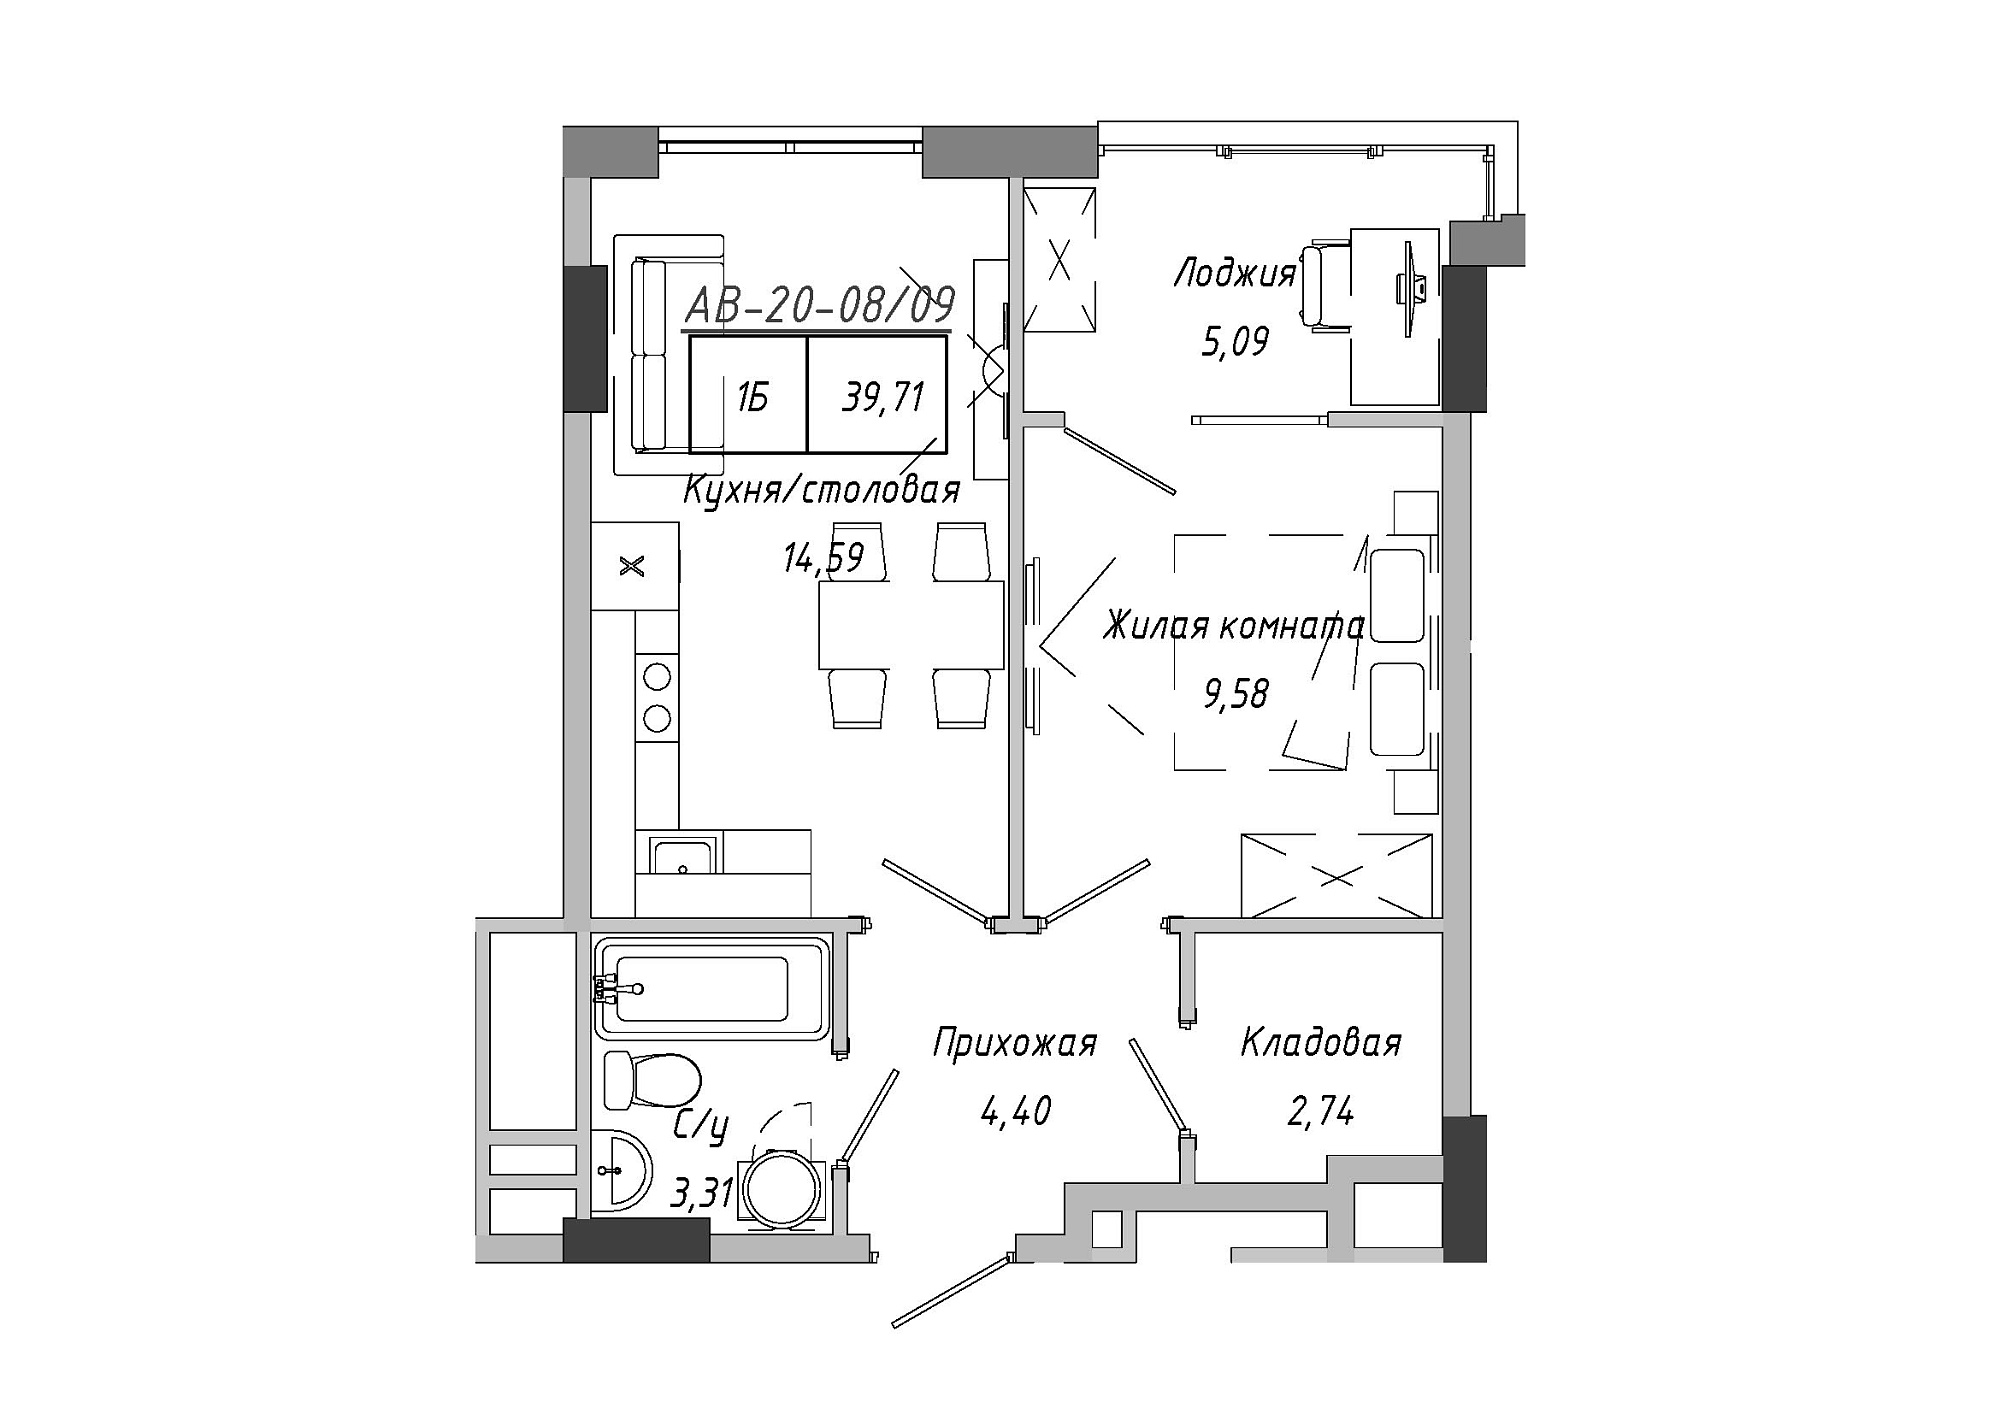 Планування 1-к квартира площею 37.59м2, AB-20-08/00009.